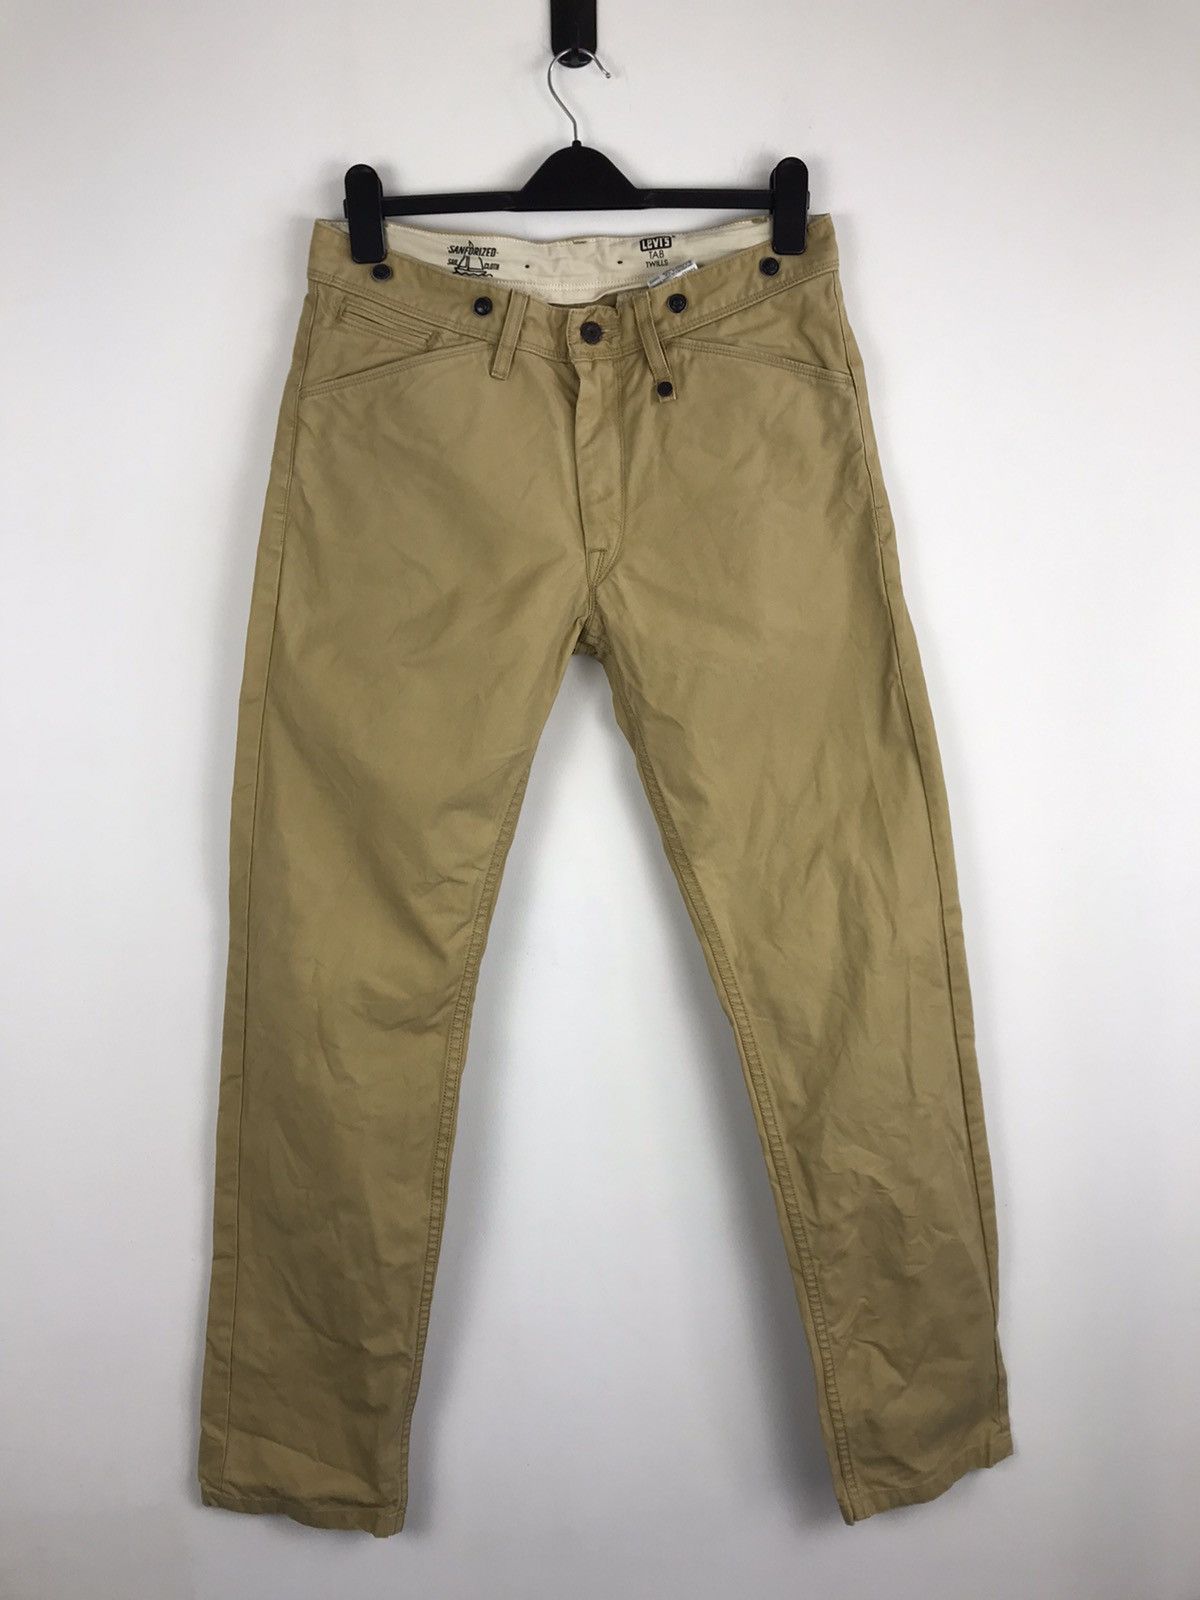 Vintage Vintage Levi’s Sanforized Sail Cloth Tab Twills Pants | Grailed